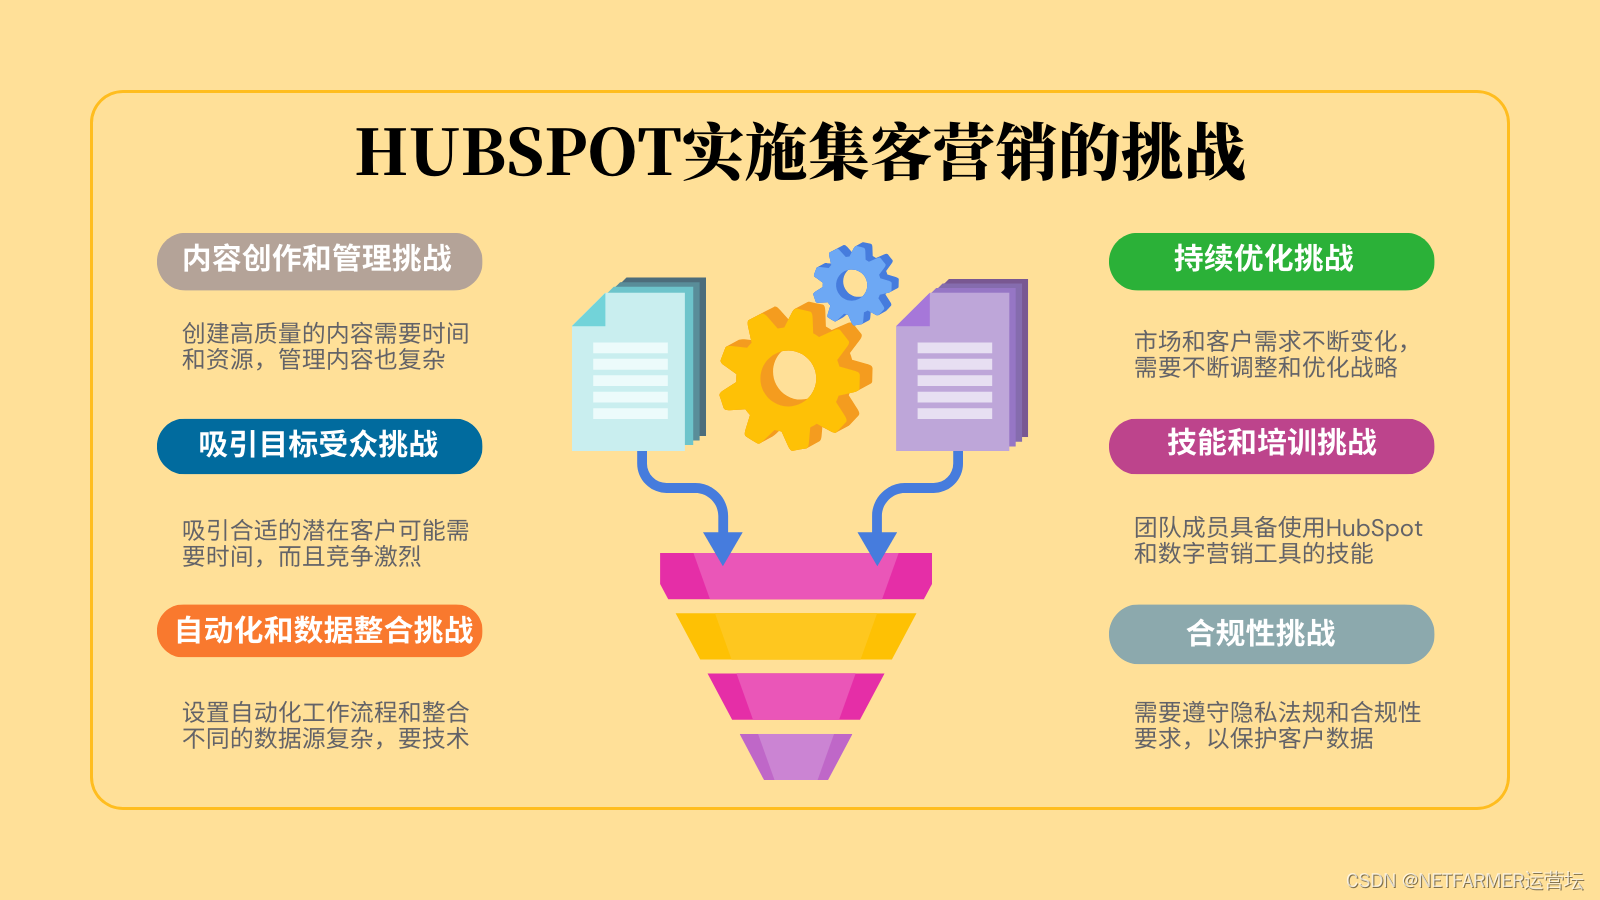 HubSpot成功全靠它？集客营销大揭秘